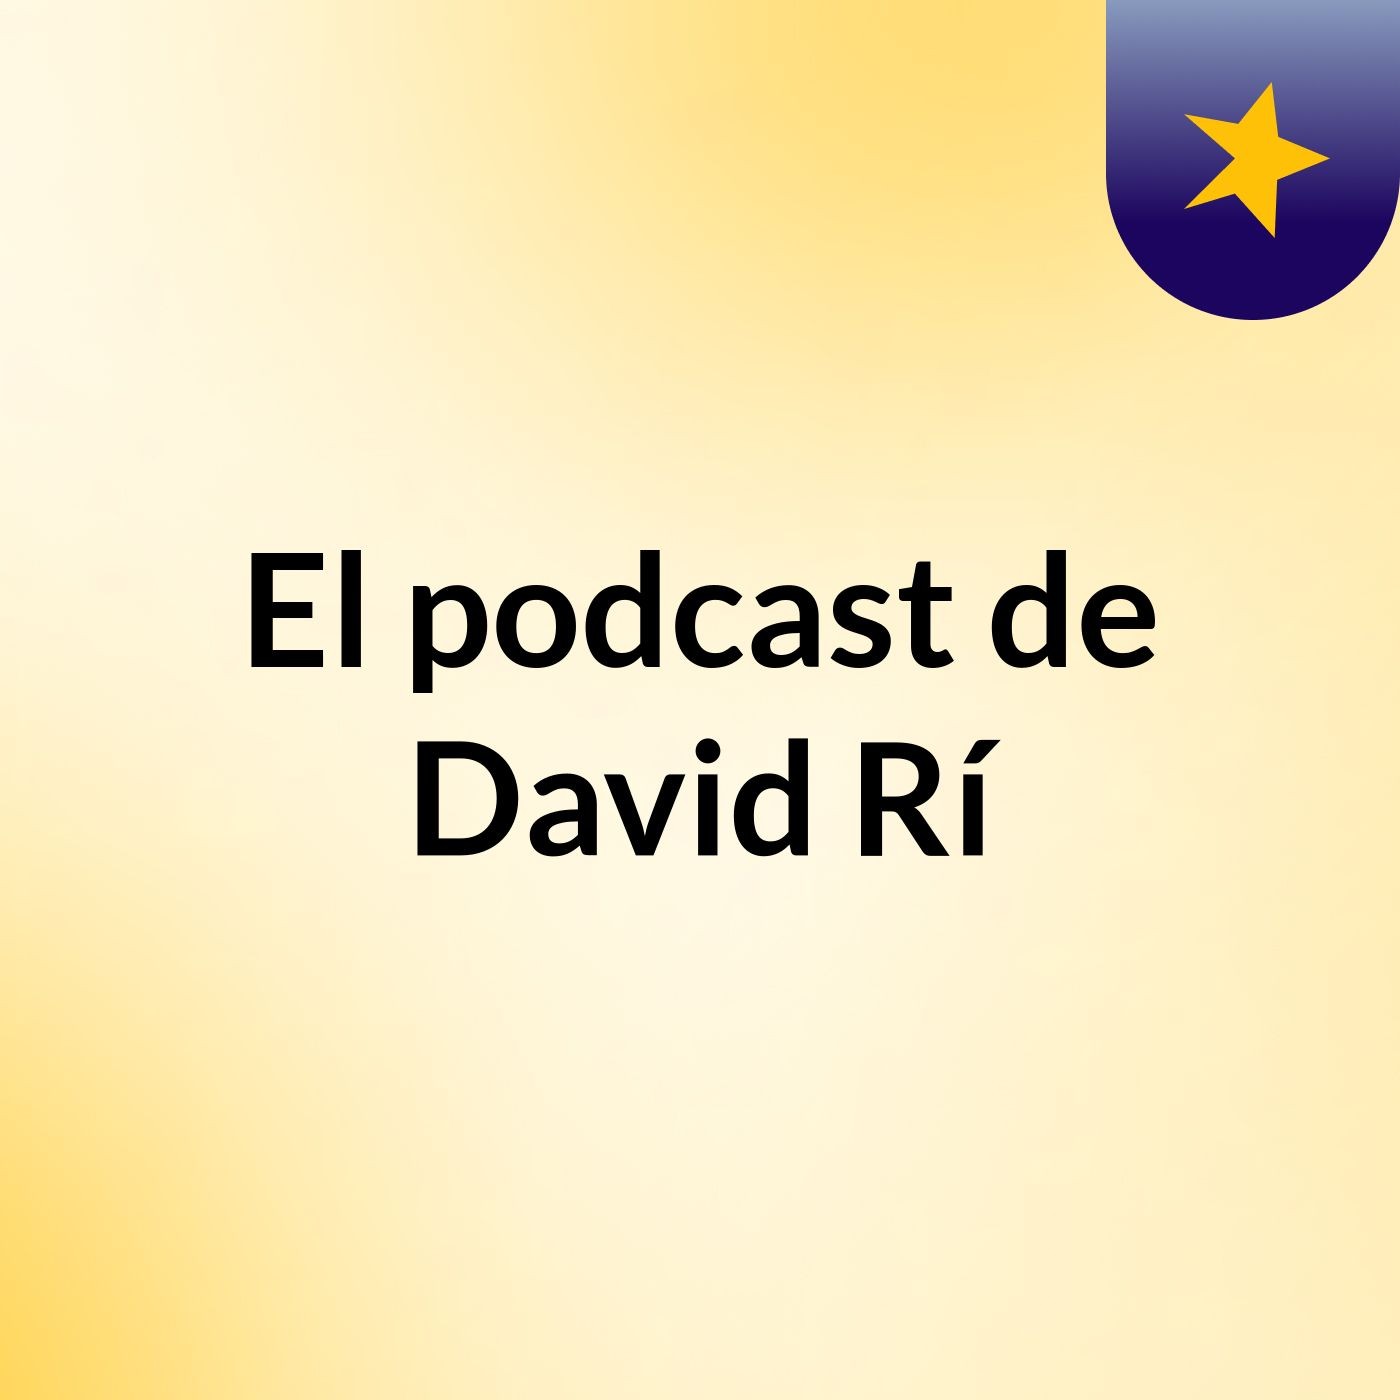 El podcast de David Rí